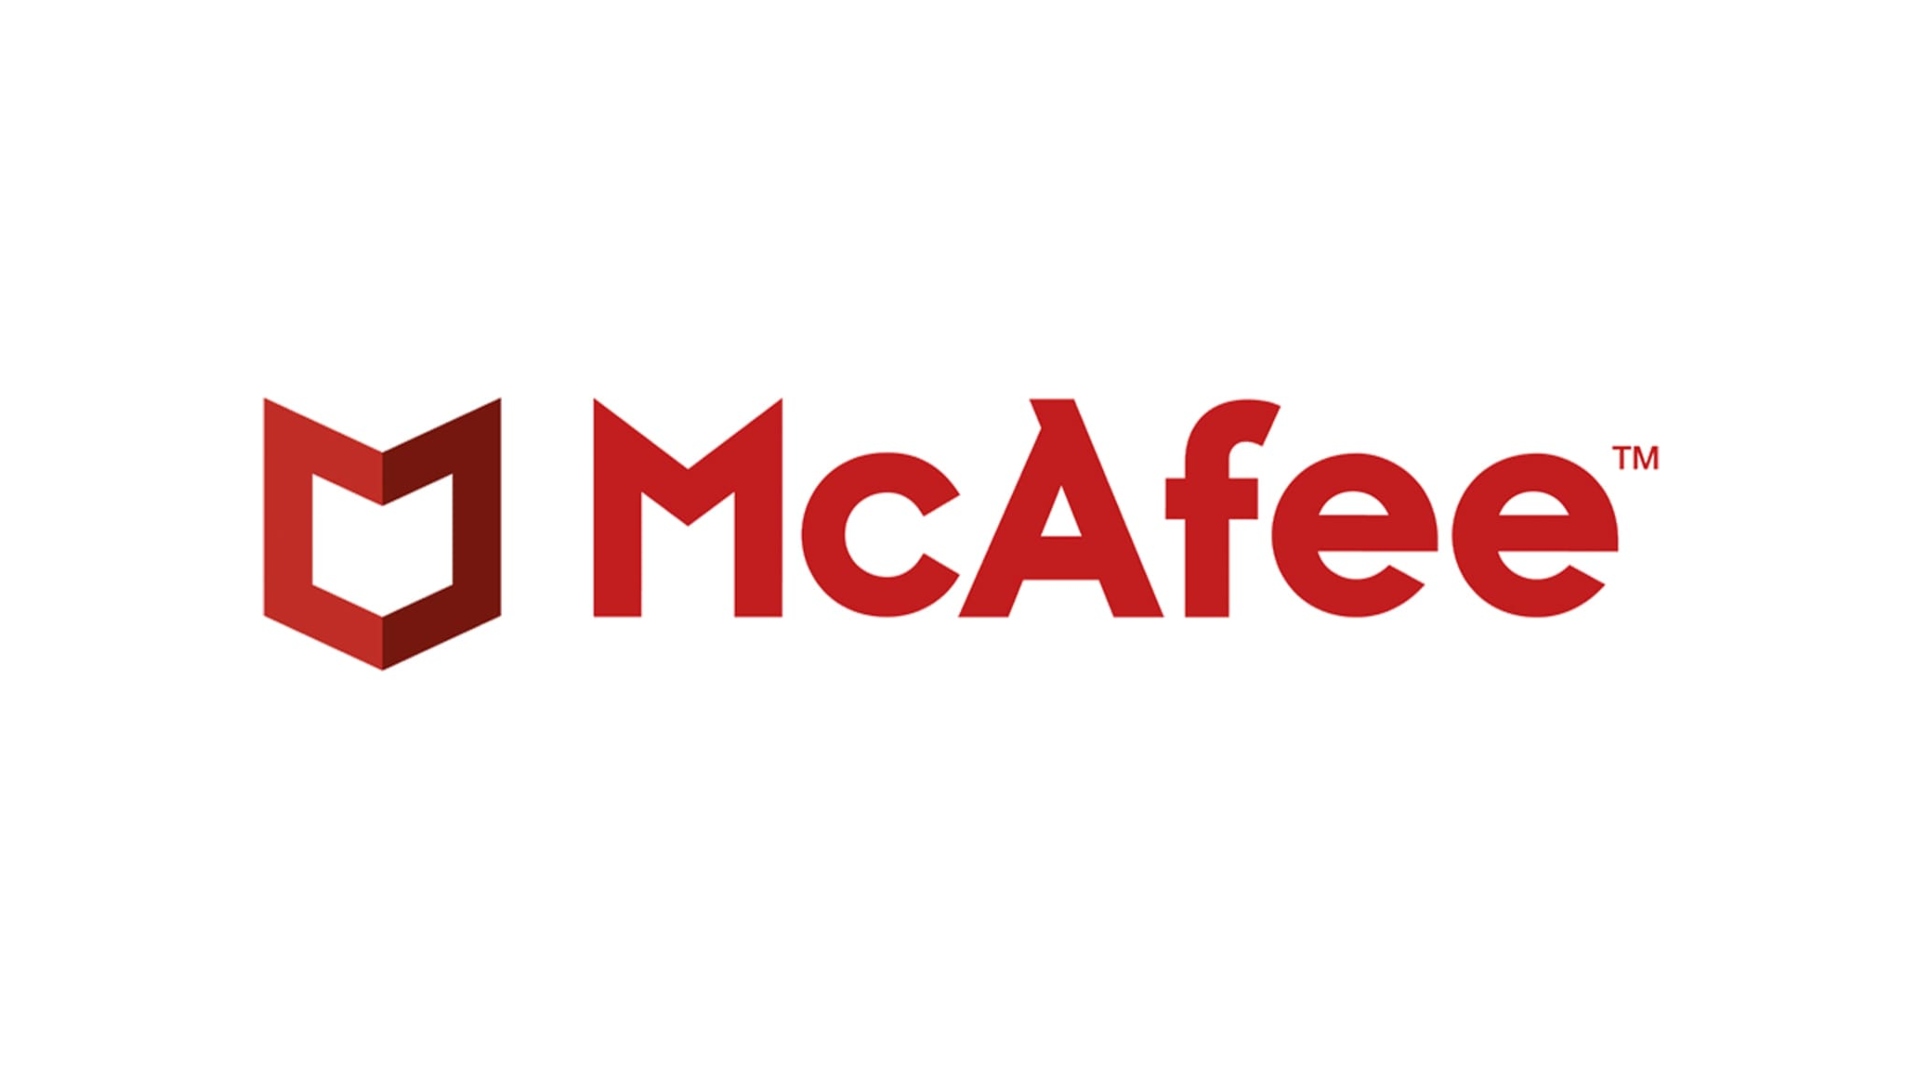 Beste antivirus: McAfee skrevet med rødt på hvit bakgrunn sammen med dets signaler